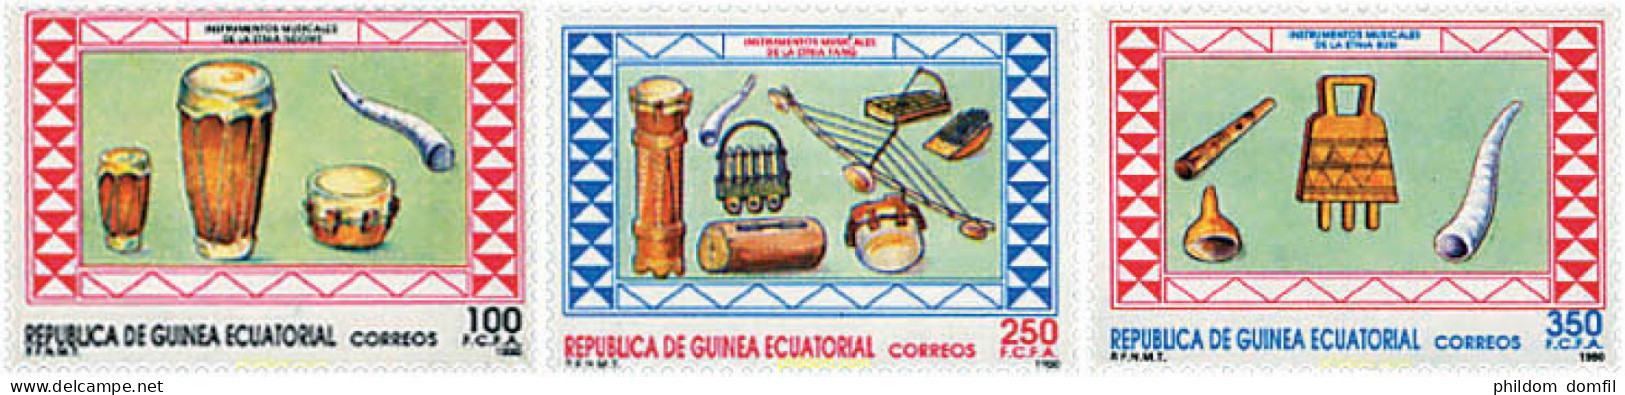 37619 MNH GUINEA ECUATORIAL 1990 INSTRUMENTOS DE MUSICA - Guinea Ecuatorial